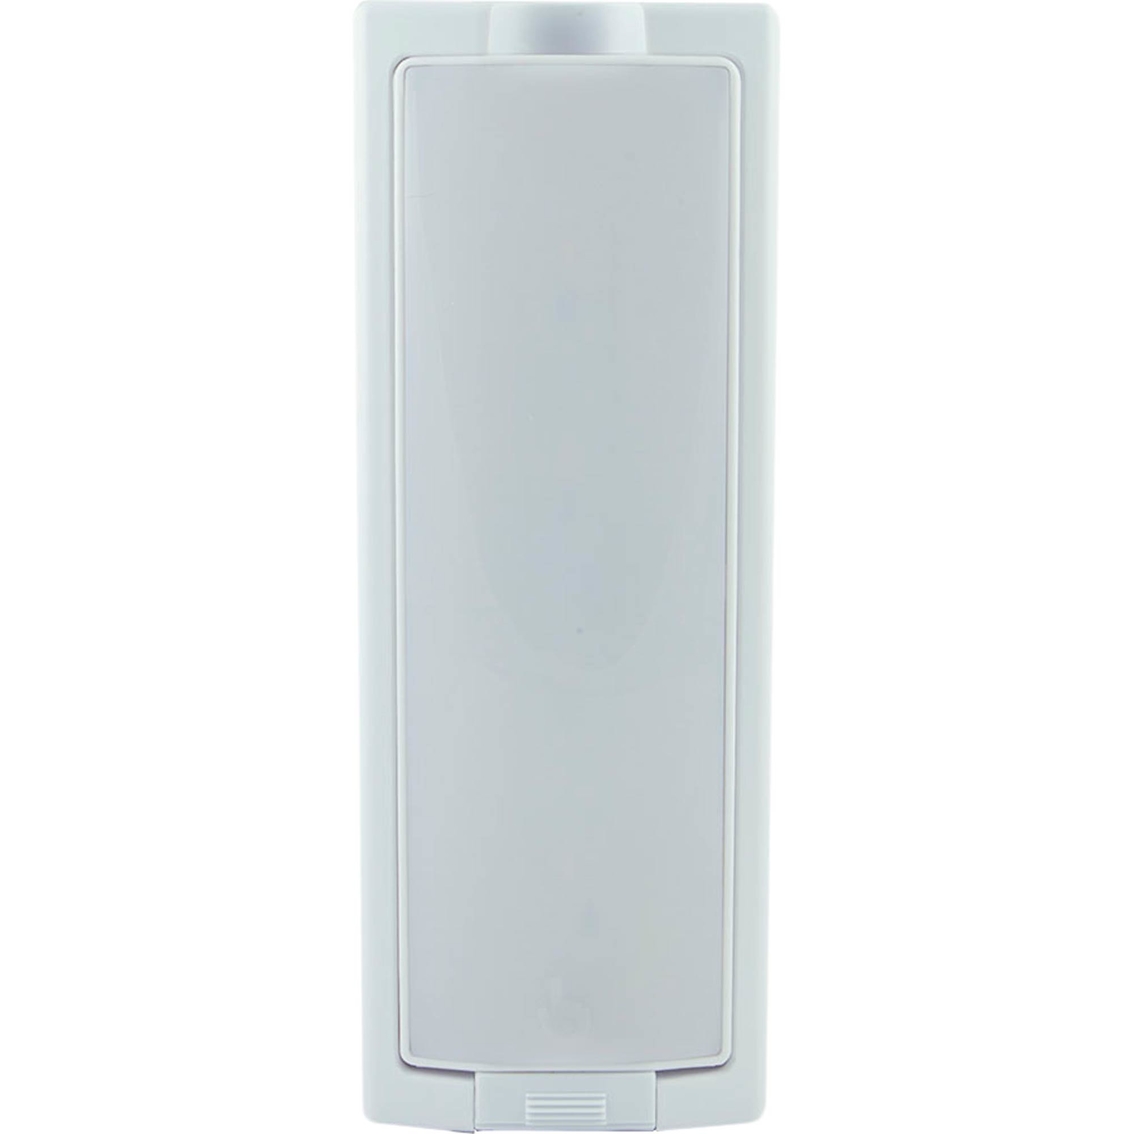 Energizer LED Swivel Utility Light - Image 2 of 6